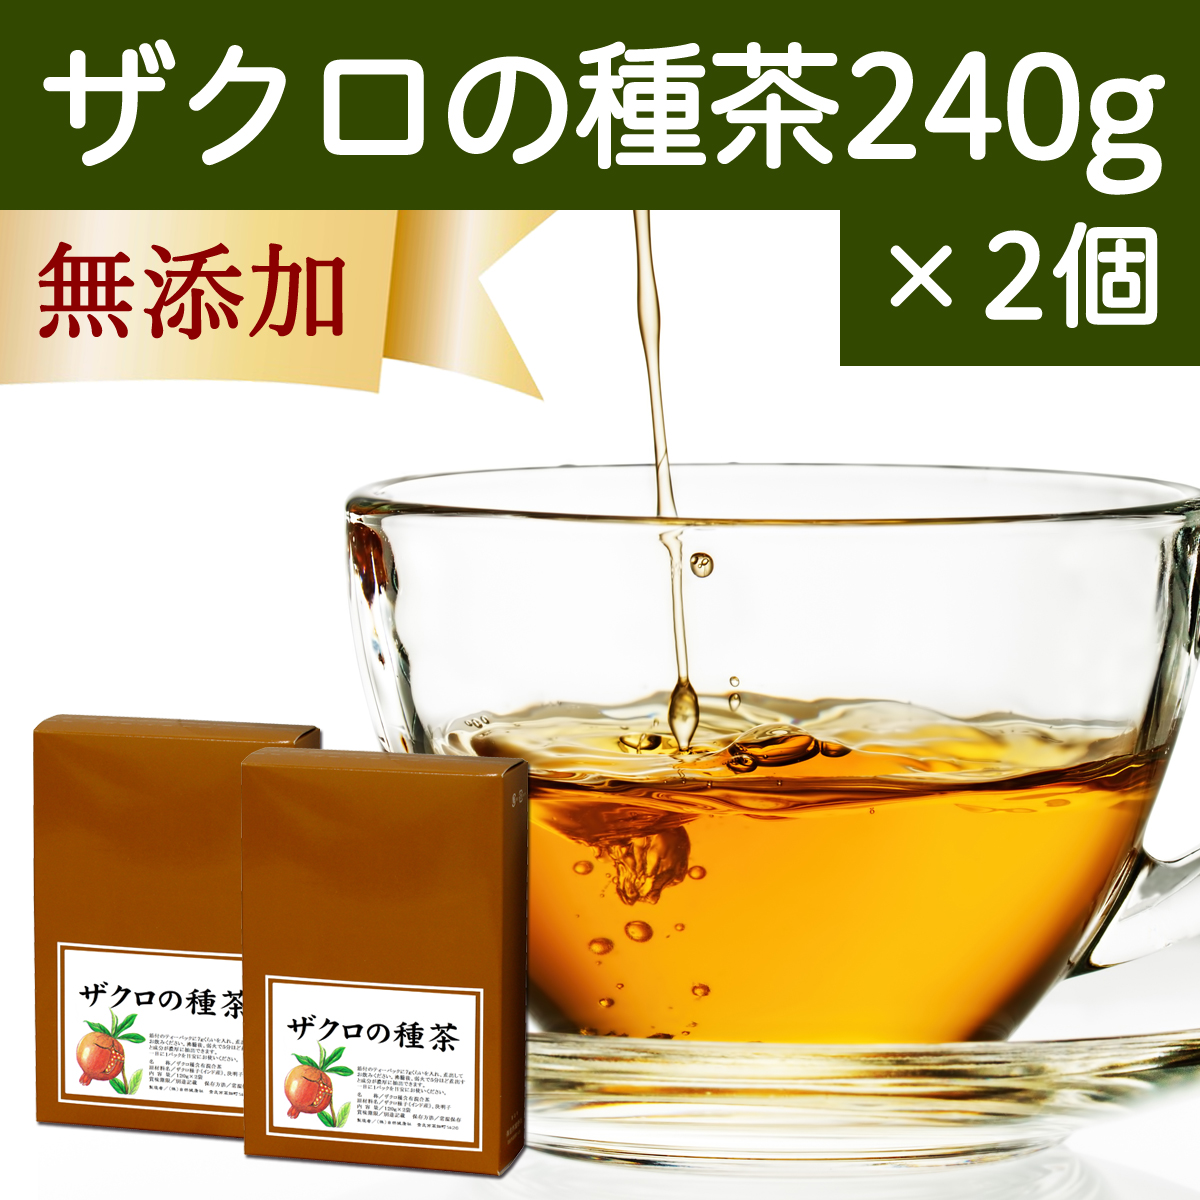 自然健康社 自然健康社 ザクロの種茶 240g × 2個 健康茶の商品画像